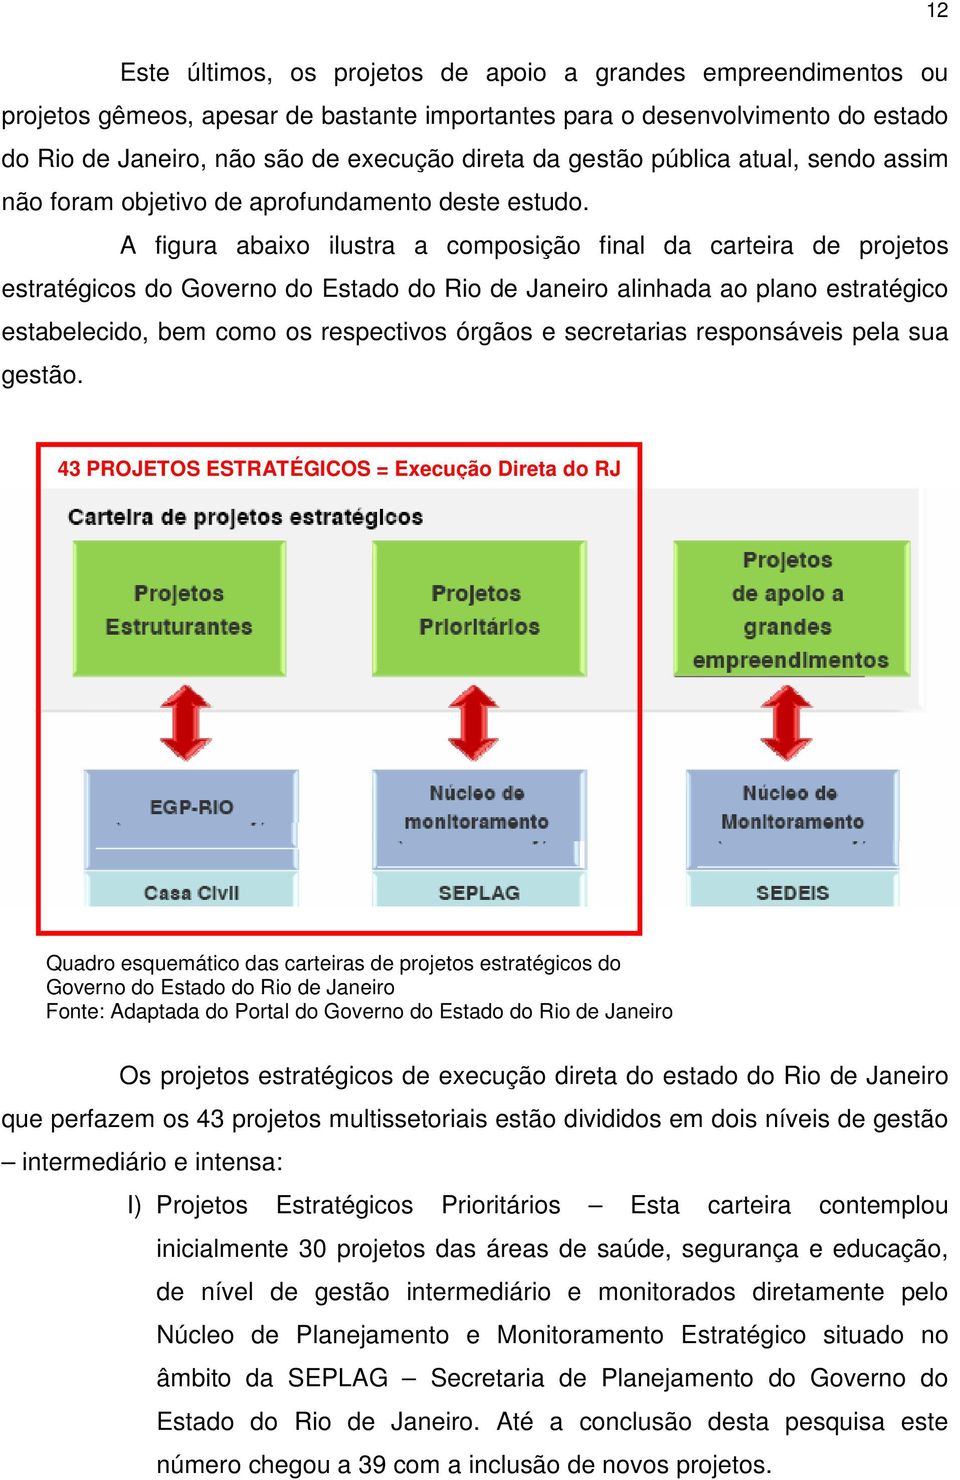 A figura abaixo ilustra a composição final da carteira de projetos estratégicos do Governo do Estado do Rio de Janeiro alinhada ao plano estratégico estabelecido, bem como os respectivos órgãos e